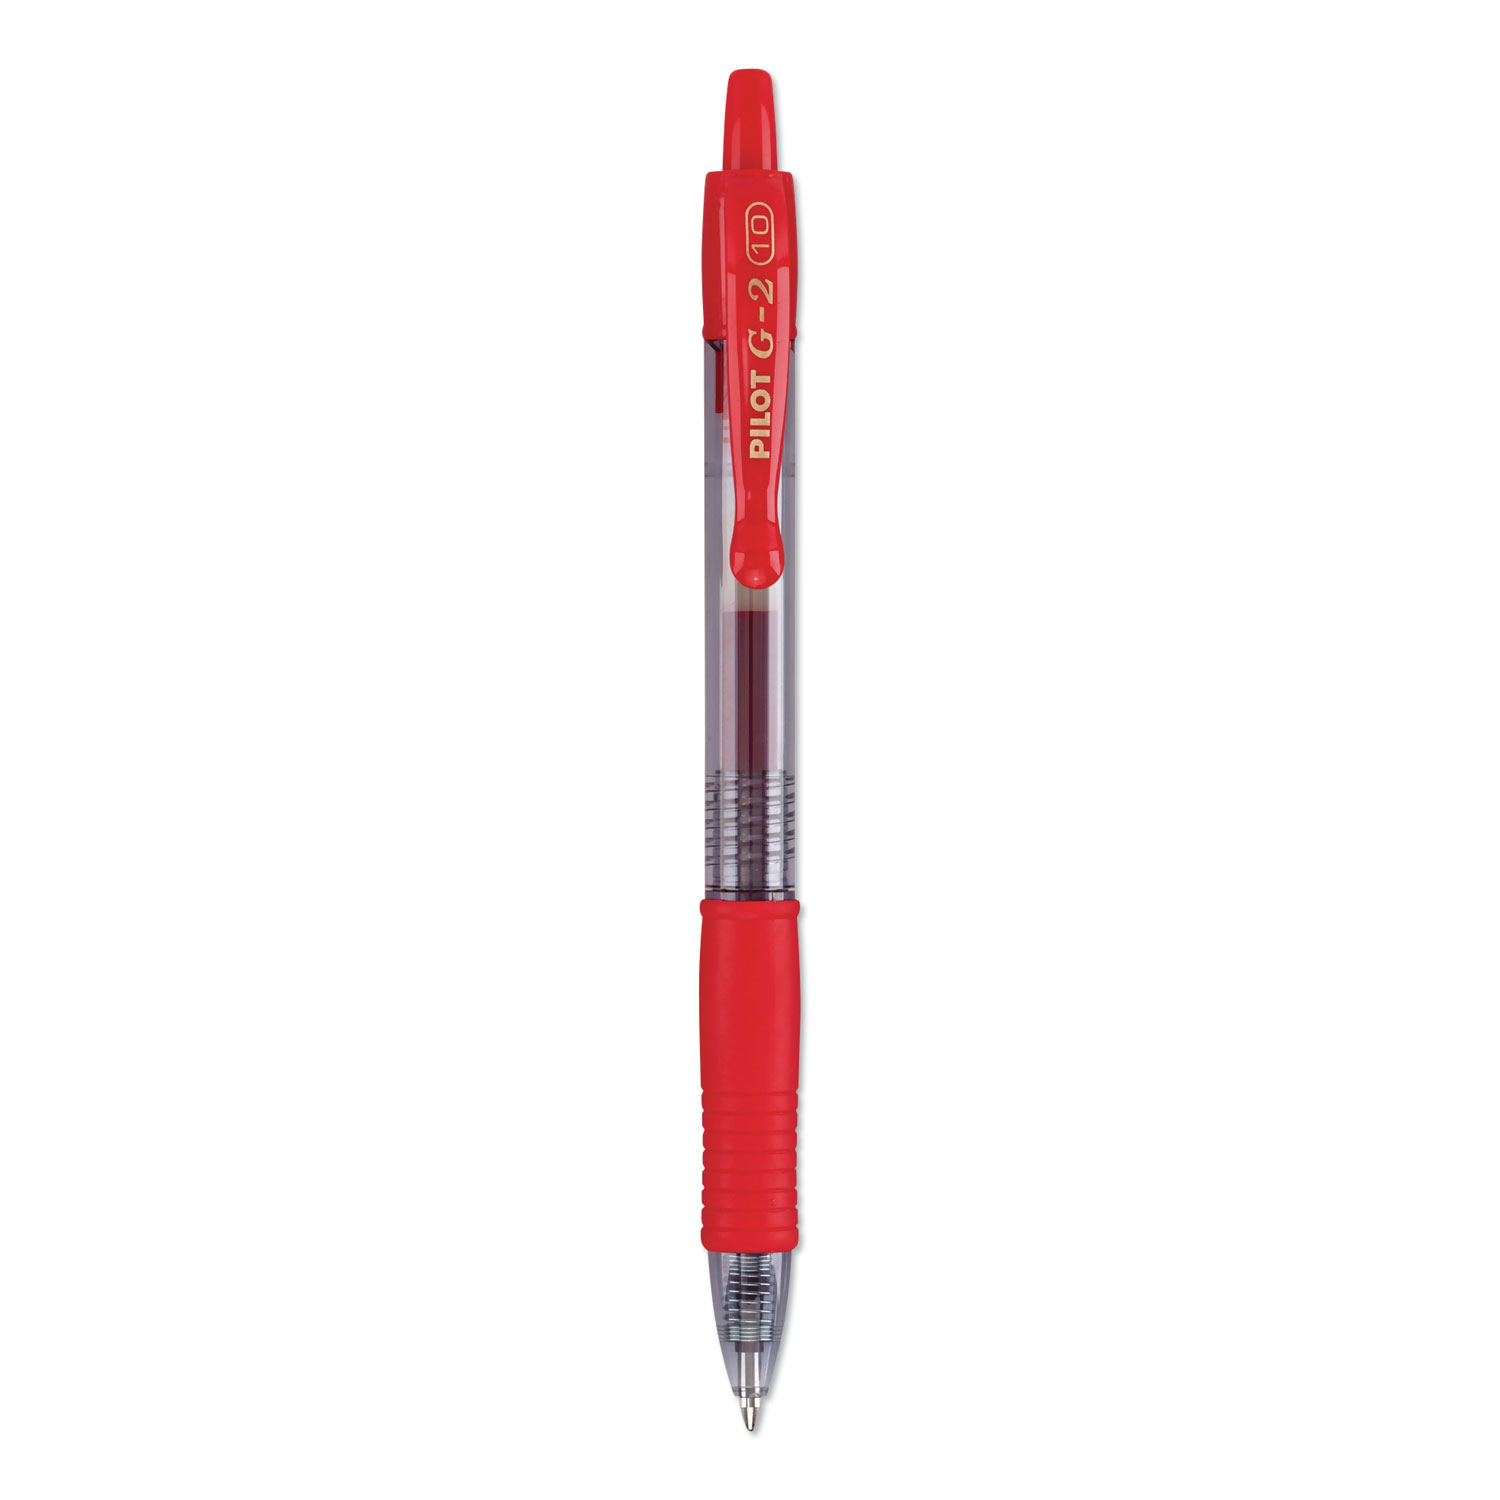  Pilot 31258 G2 Premium Retractable Gel Pen, 1mm, Red Ink, Smoke Barrel, Dozen (PIL31258) 